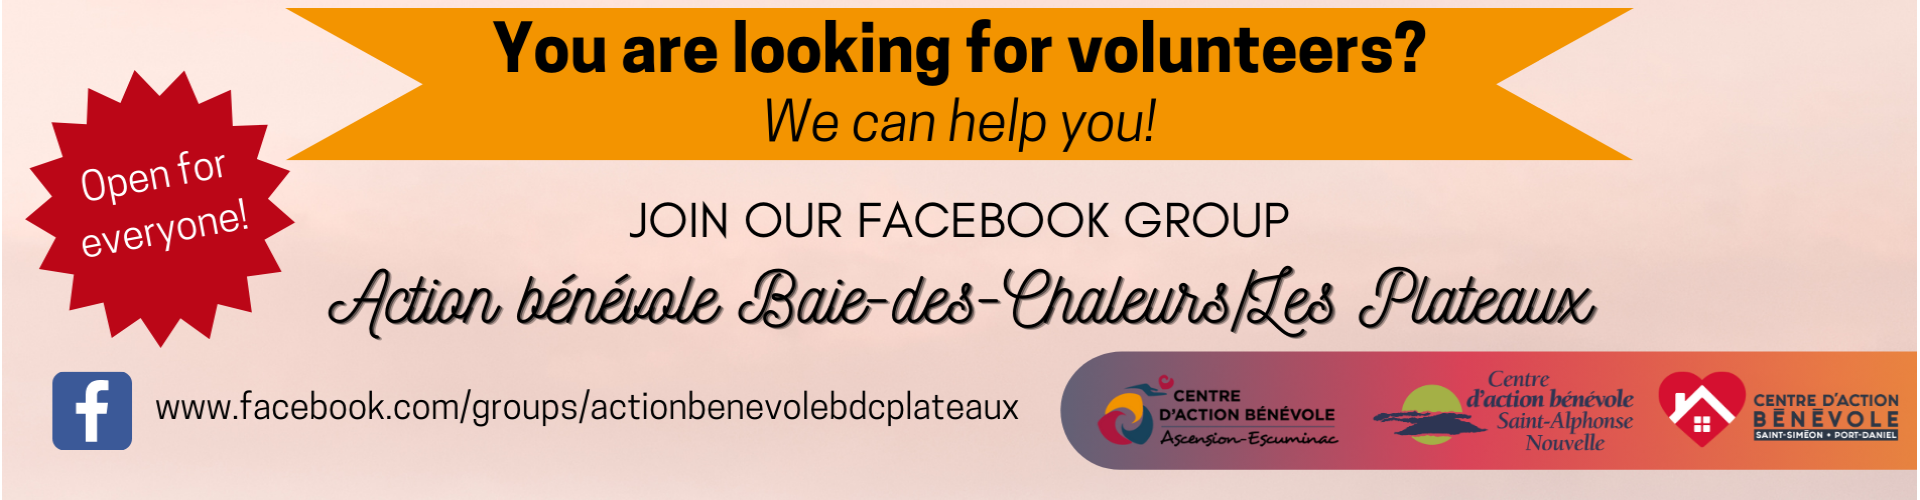 Facebook Group Action bénévole Baie-des-Chaleurs/Les Plateaux